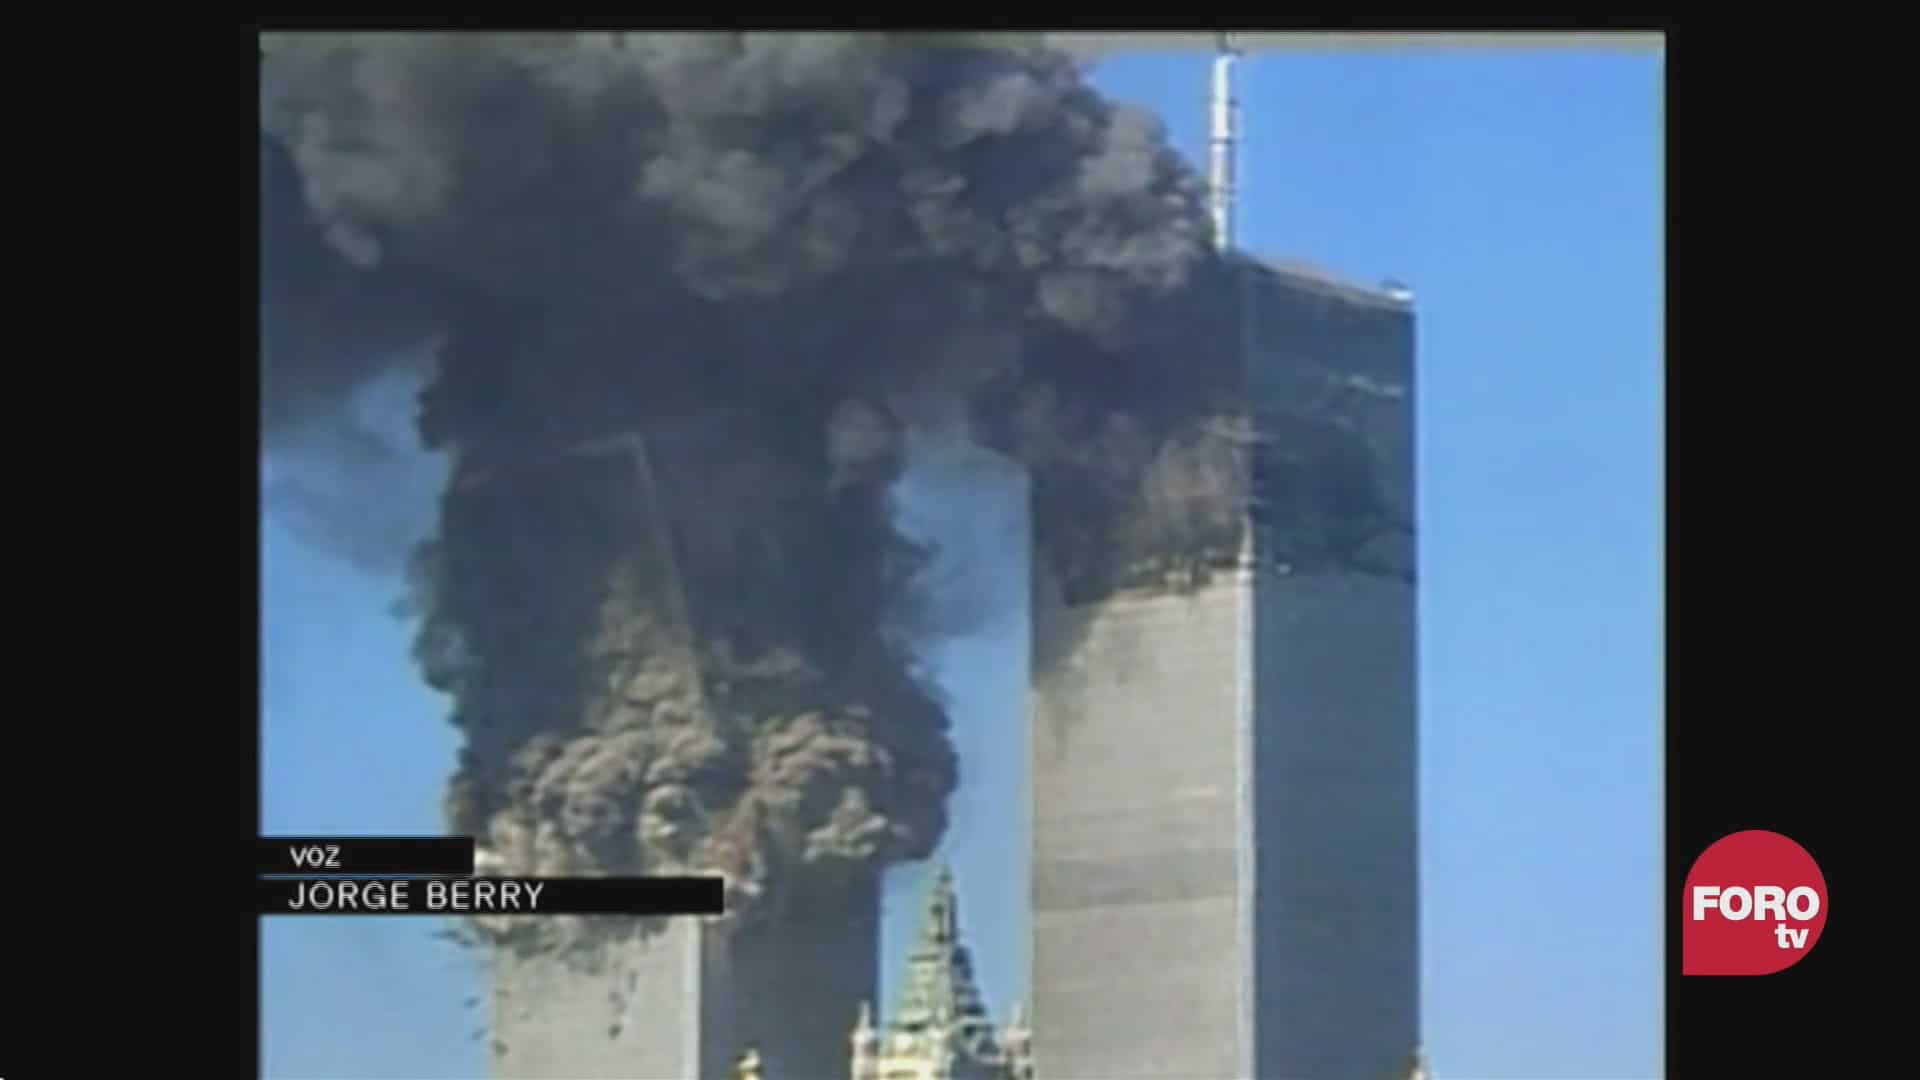 asi se reportaron los atentados del 11 s hace 20 anos